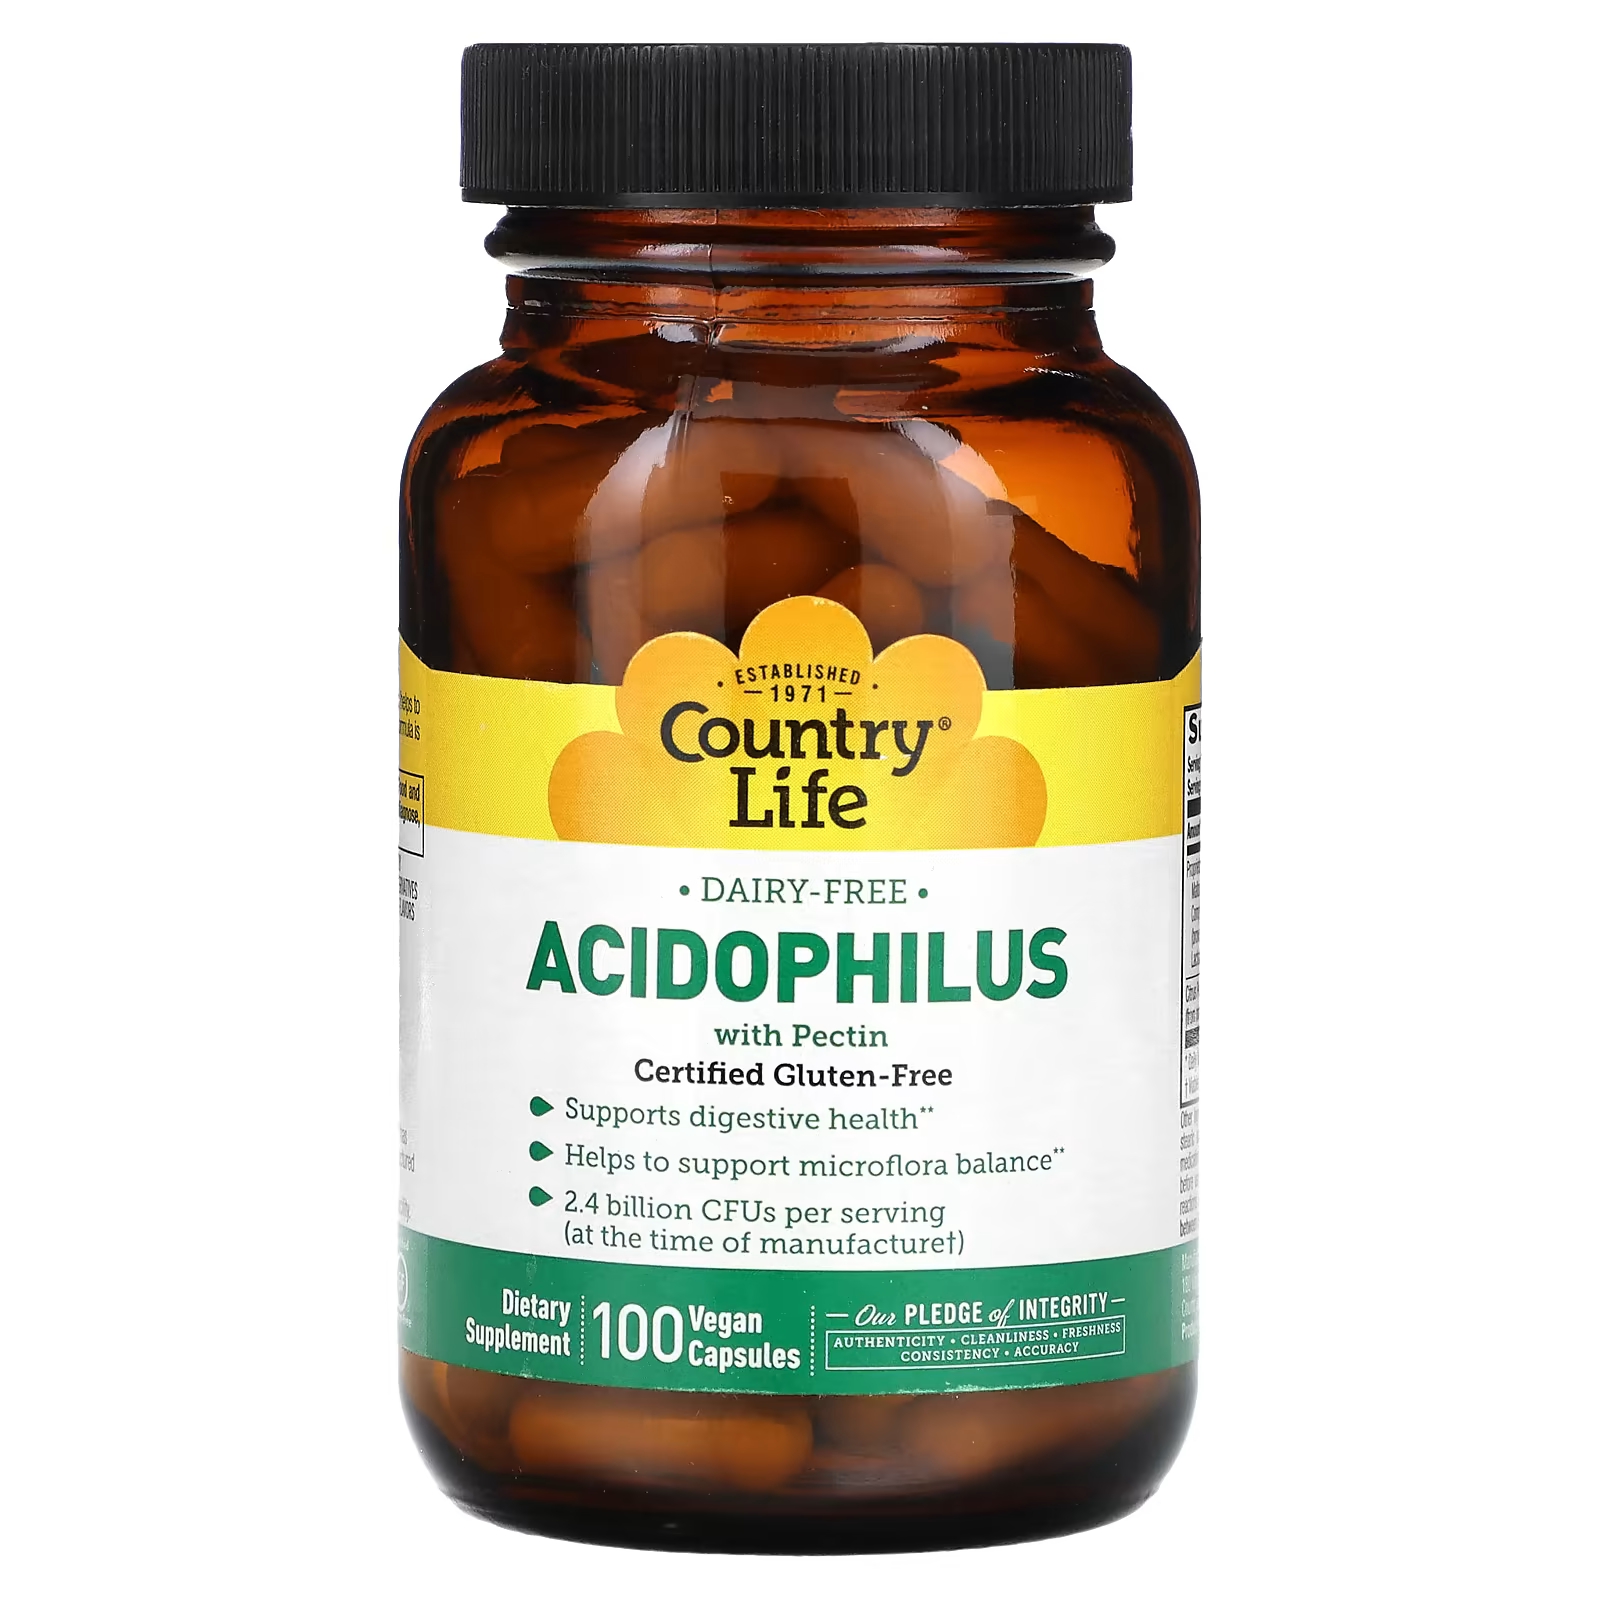 Пищевая добавка Country Life Acidophilus с пектином, 100 веганских капсул mason natural пробиотик с ацидофильными лактобактериями acidophilus с пектином 100 капсул